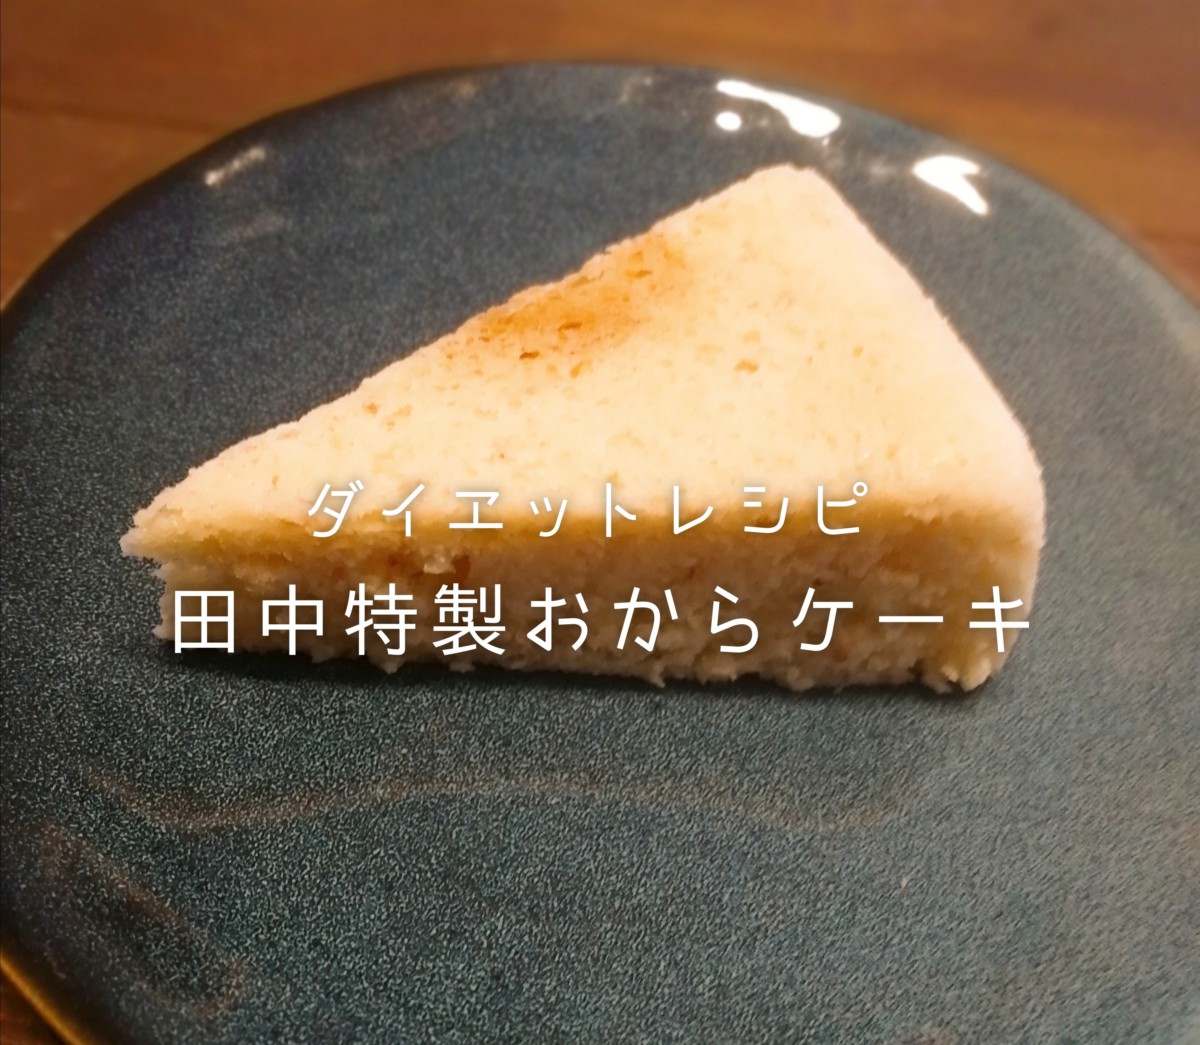 【ダイエット中の間食に】田中特製おからケーキレシピ